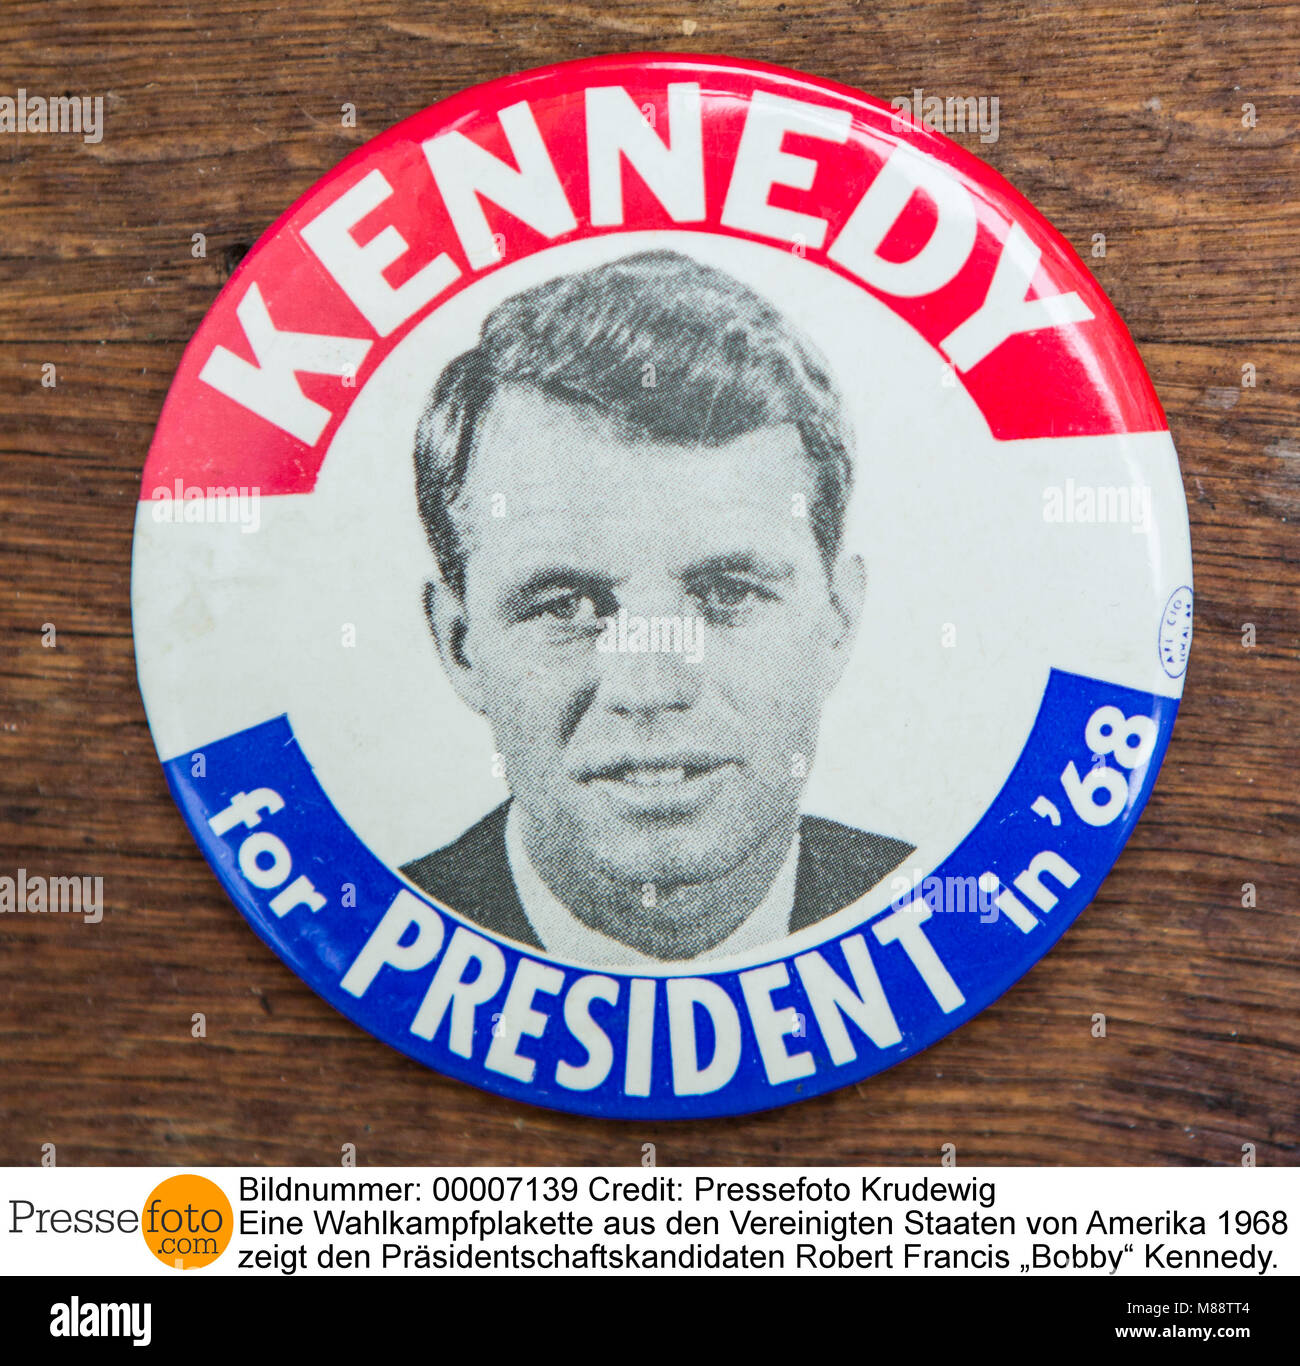 Eine Wahlkampfplakette aus den Vereinigten Staaten von Amerika 1968 zeigt den Präsidentschaftskandidaten Robert Francis ?Bobby? Kennedy. Der jüngere B Foto Stock